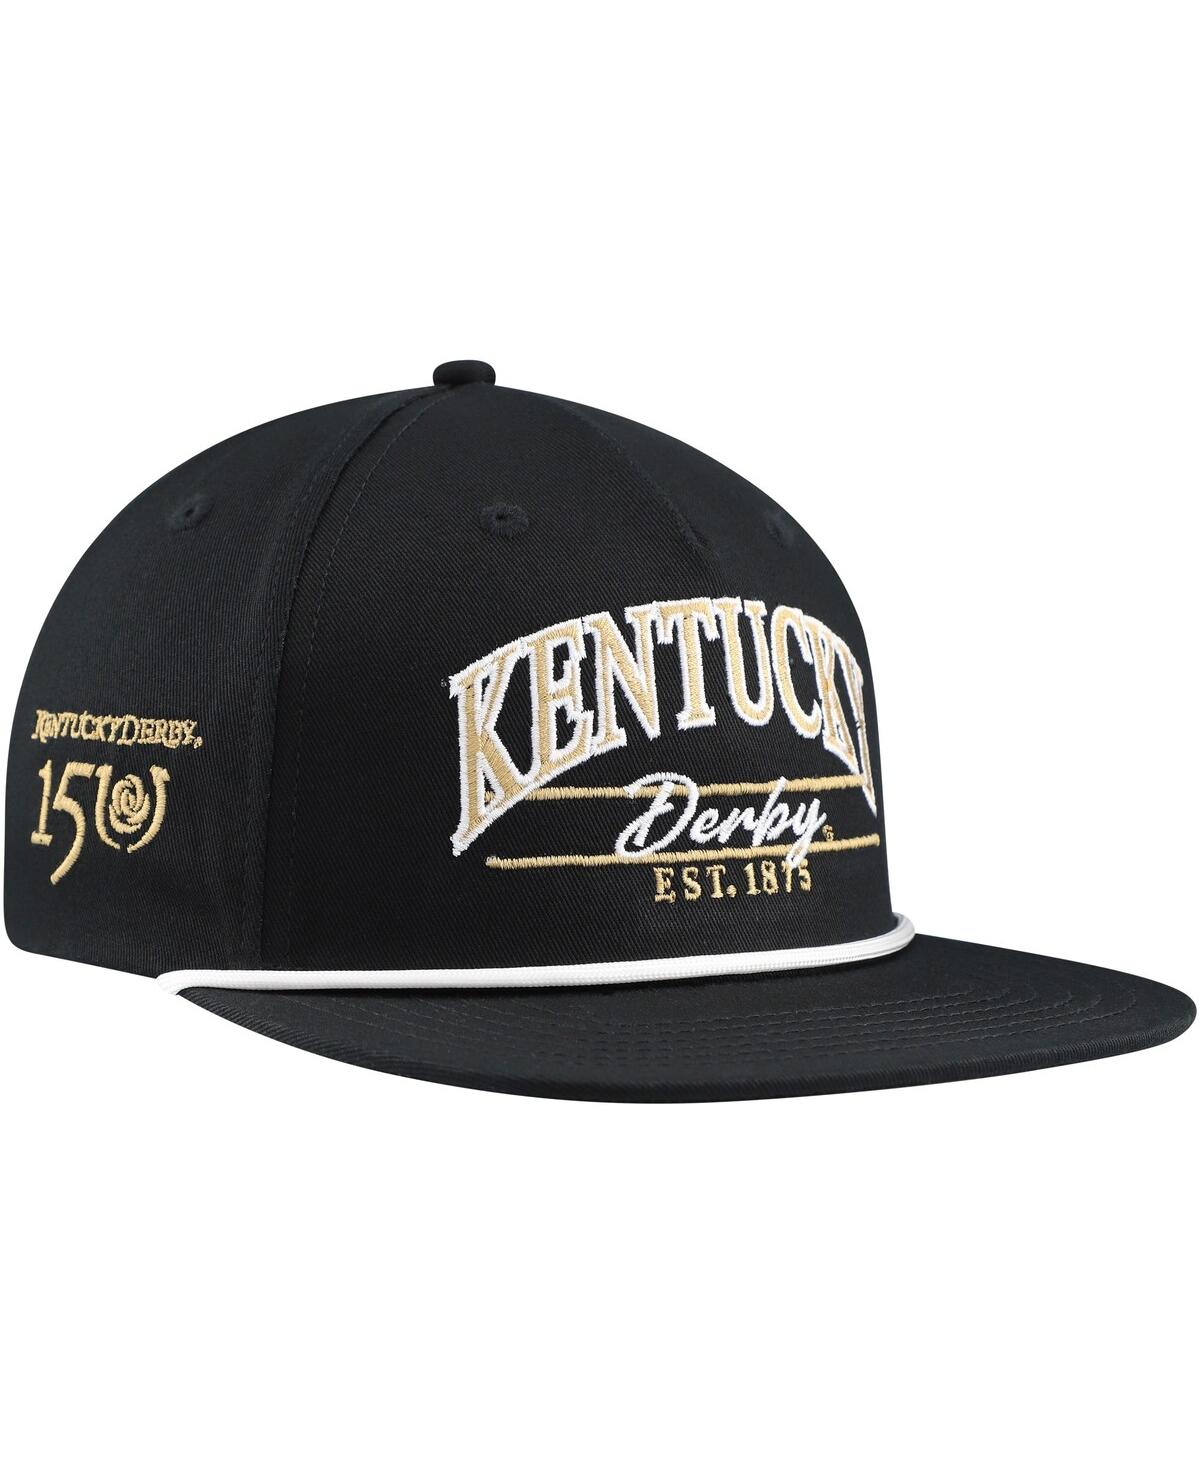 Men's Ahead Black Kentucky Derby 150 Westport Snapback Hat - Black